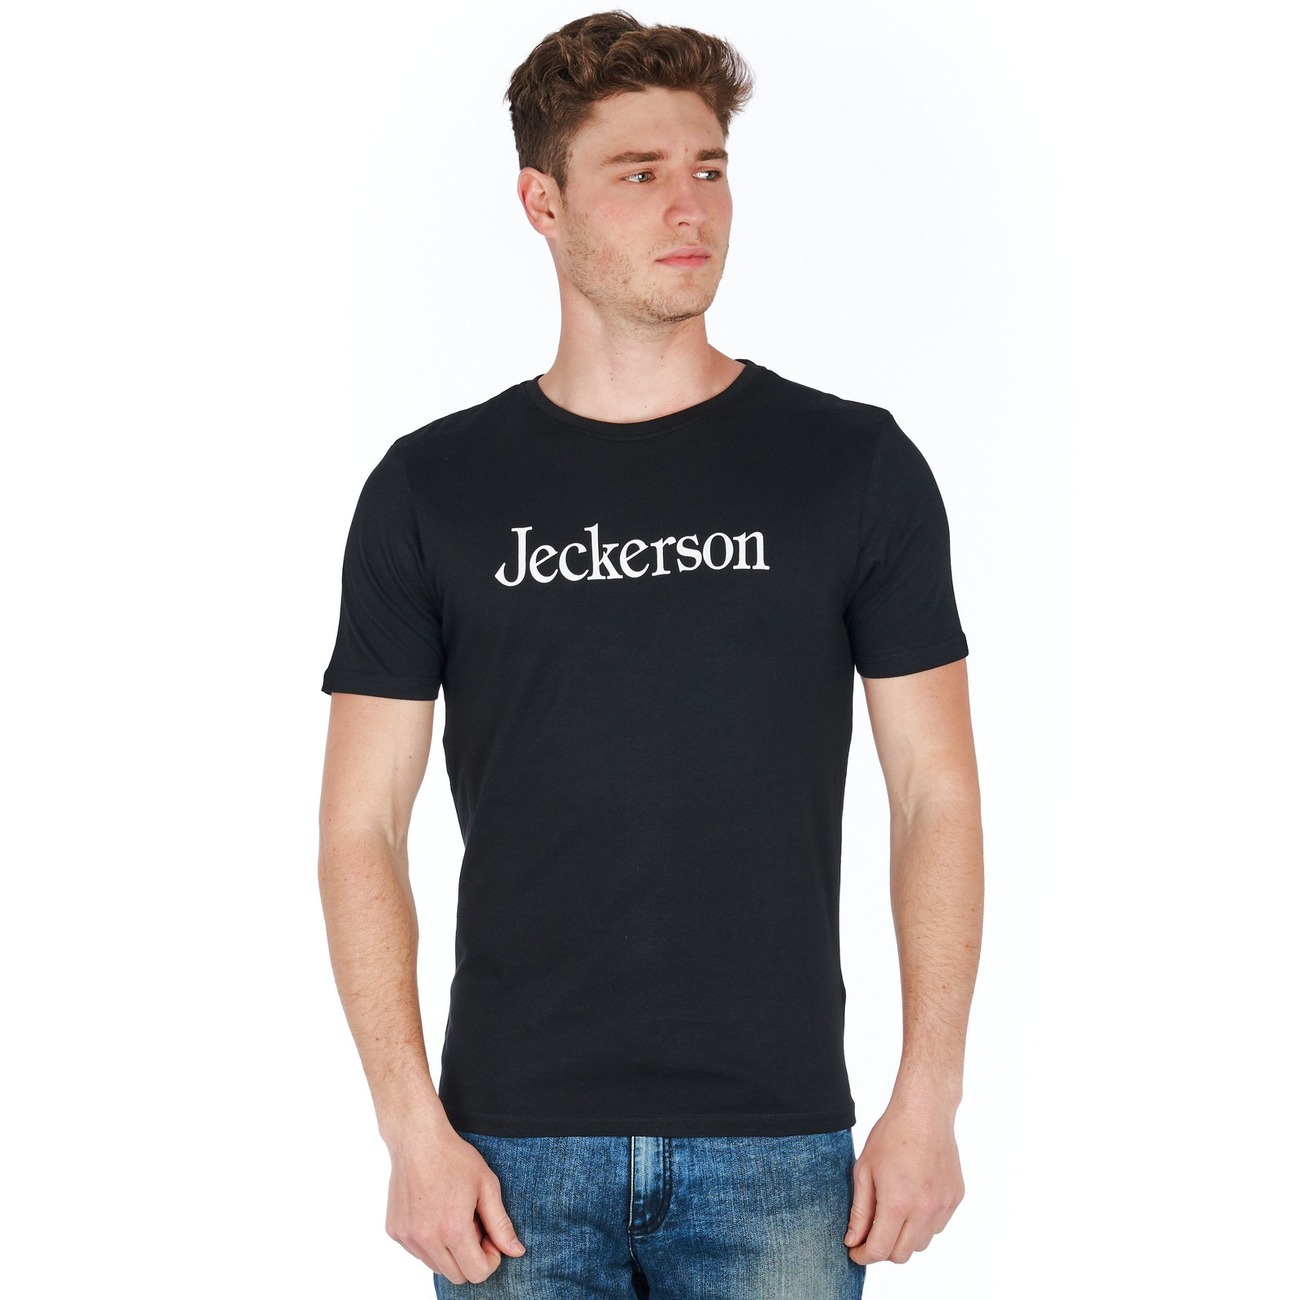 Jeckerson - CLASSIC